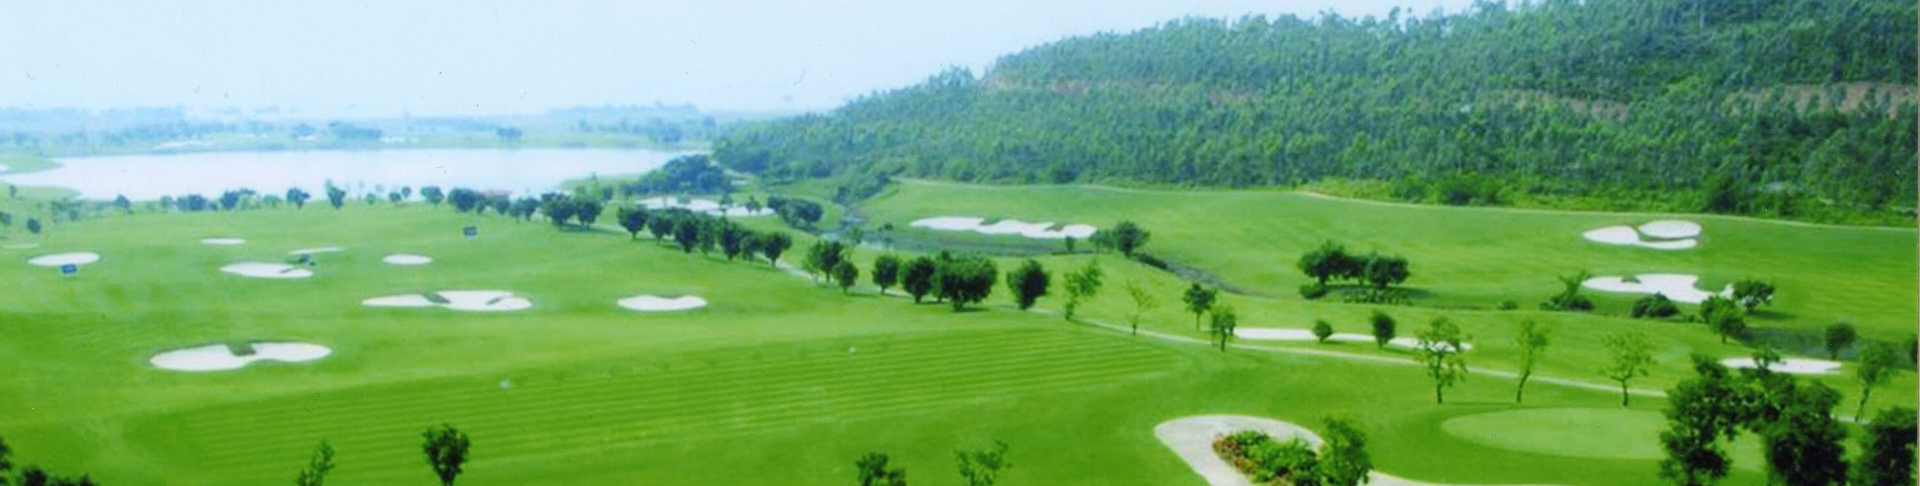 Circuit de séjour golf à Danang et aux alentours 5 jours